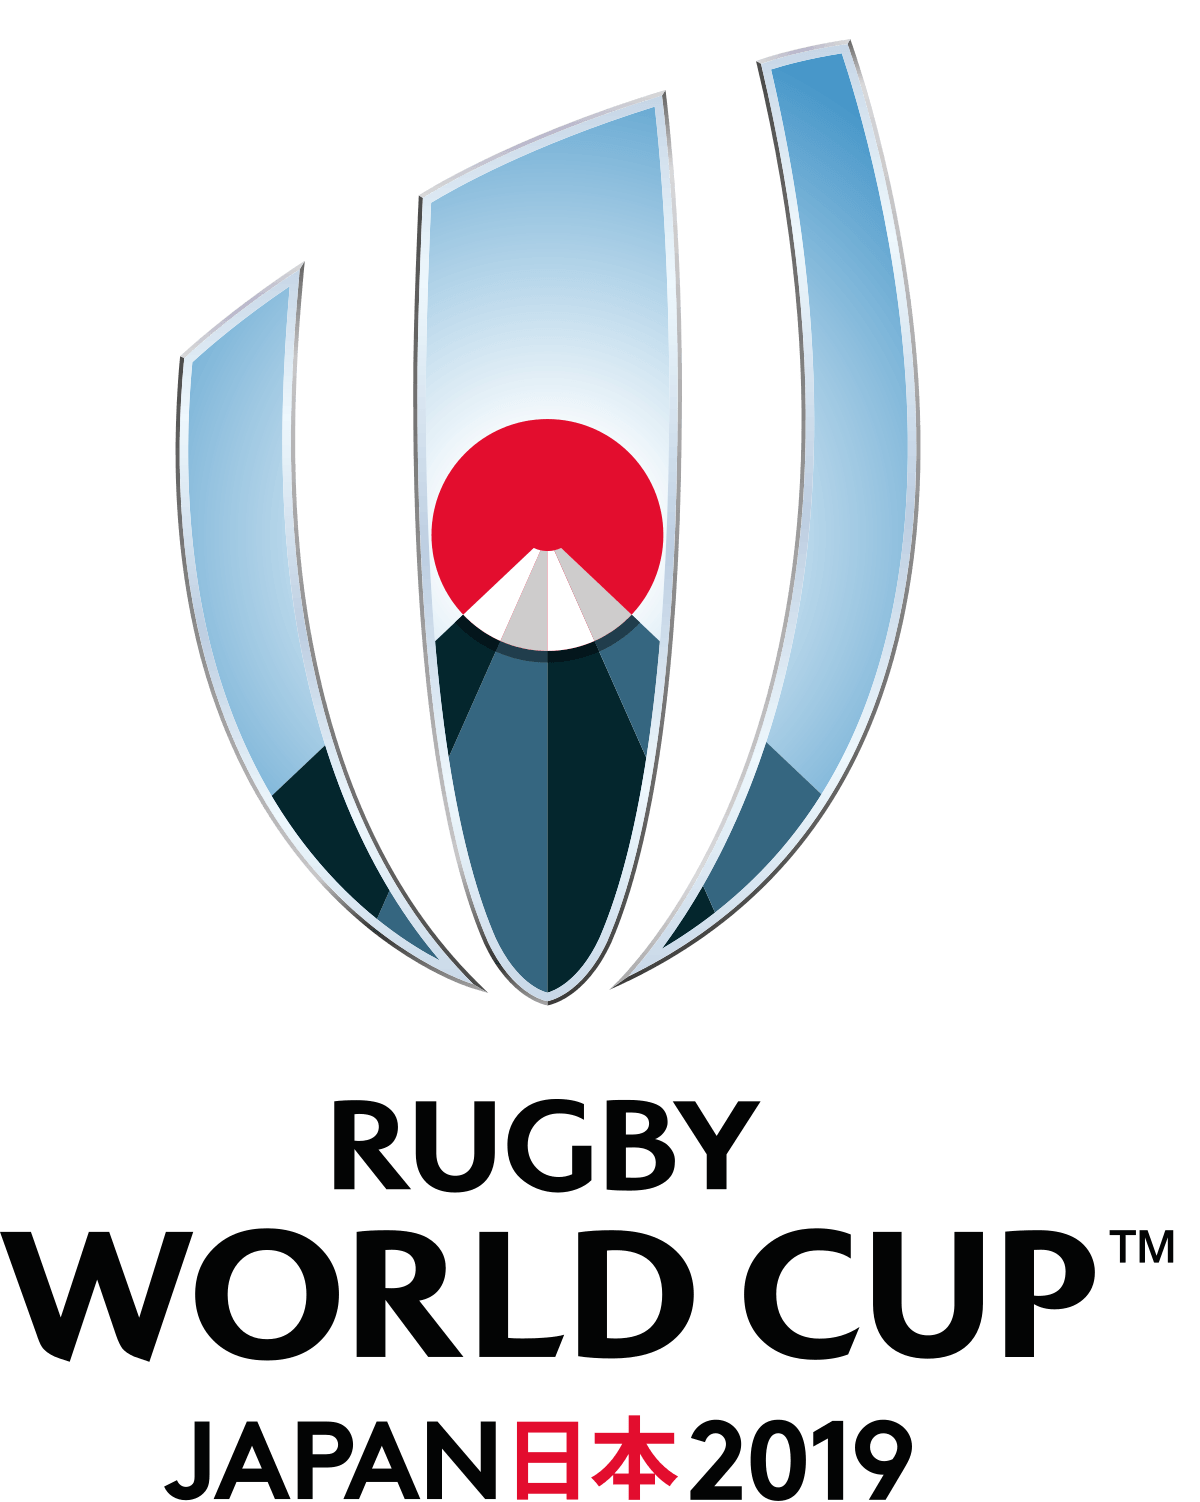 RWC Logo - 2019 Rugby World Cup